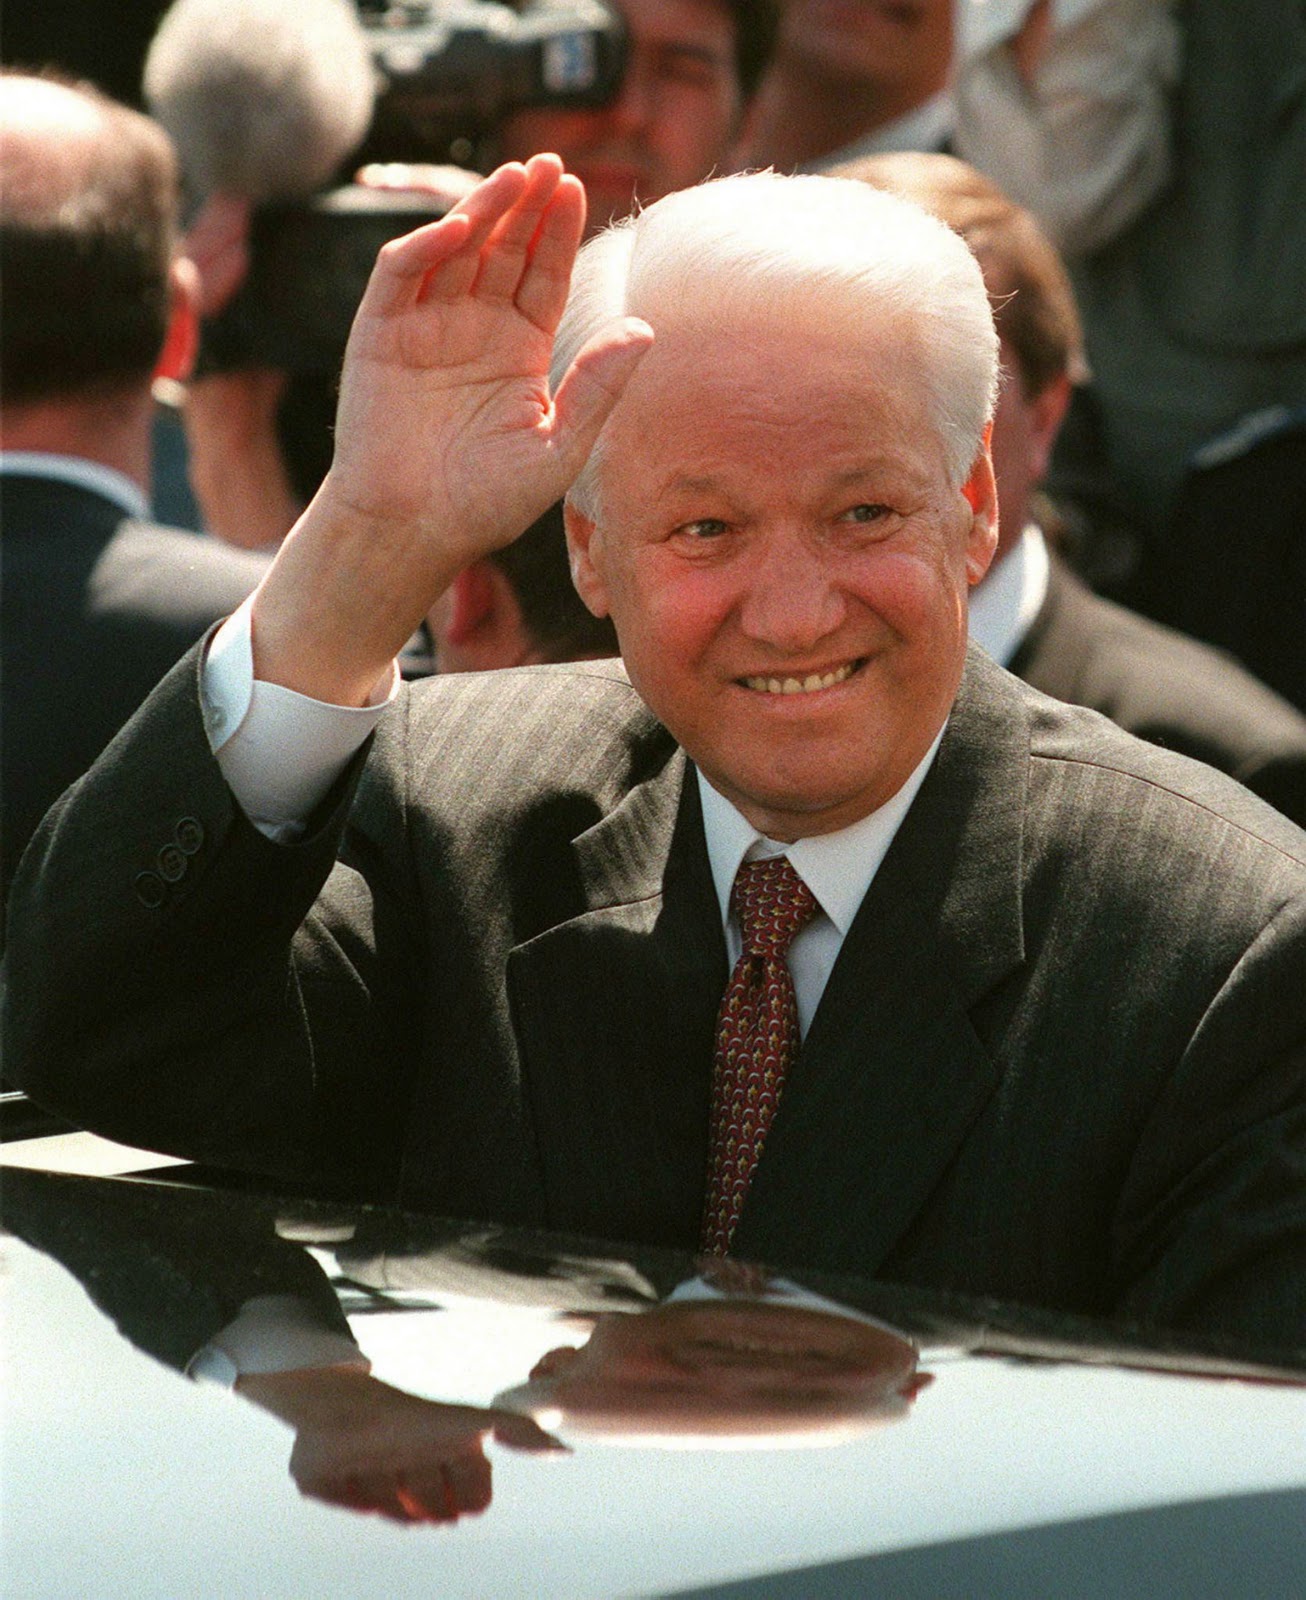 Личности политиками. Ельцин 1994. Горбачев танцует. Ельцин пьяный. "Комуза" Yeltsin.